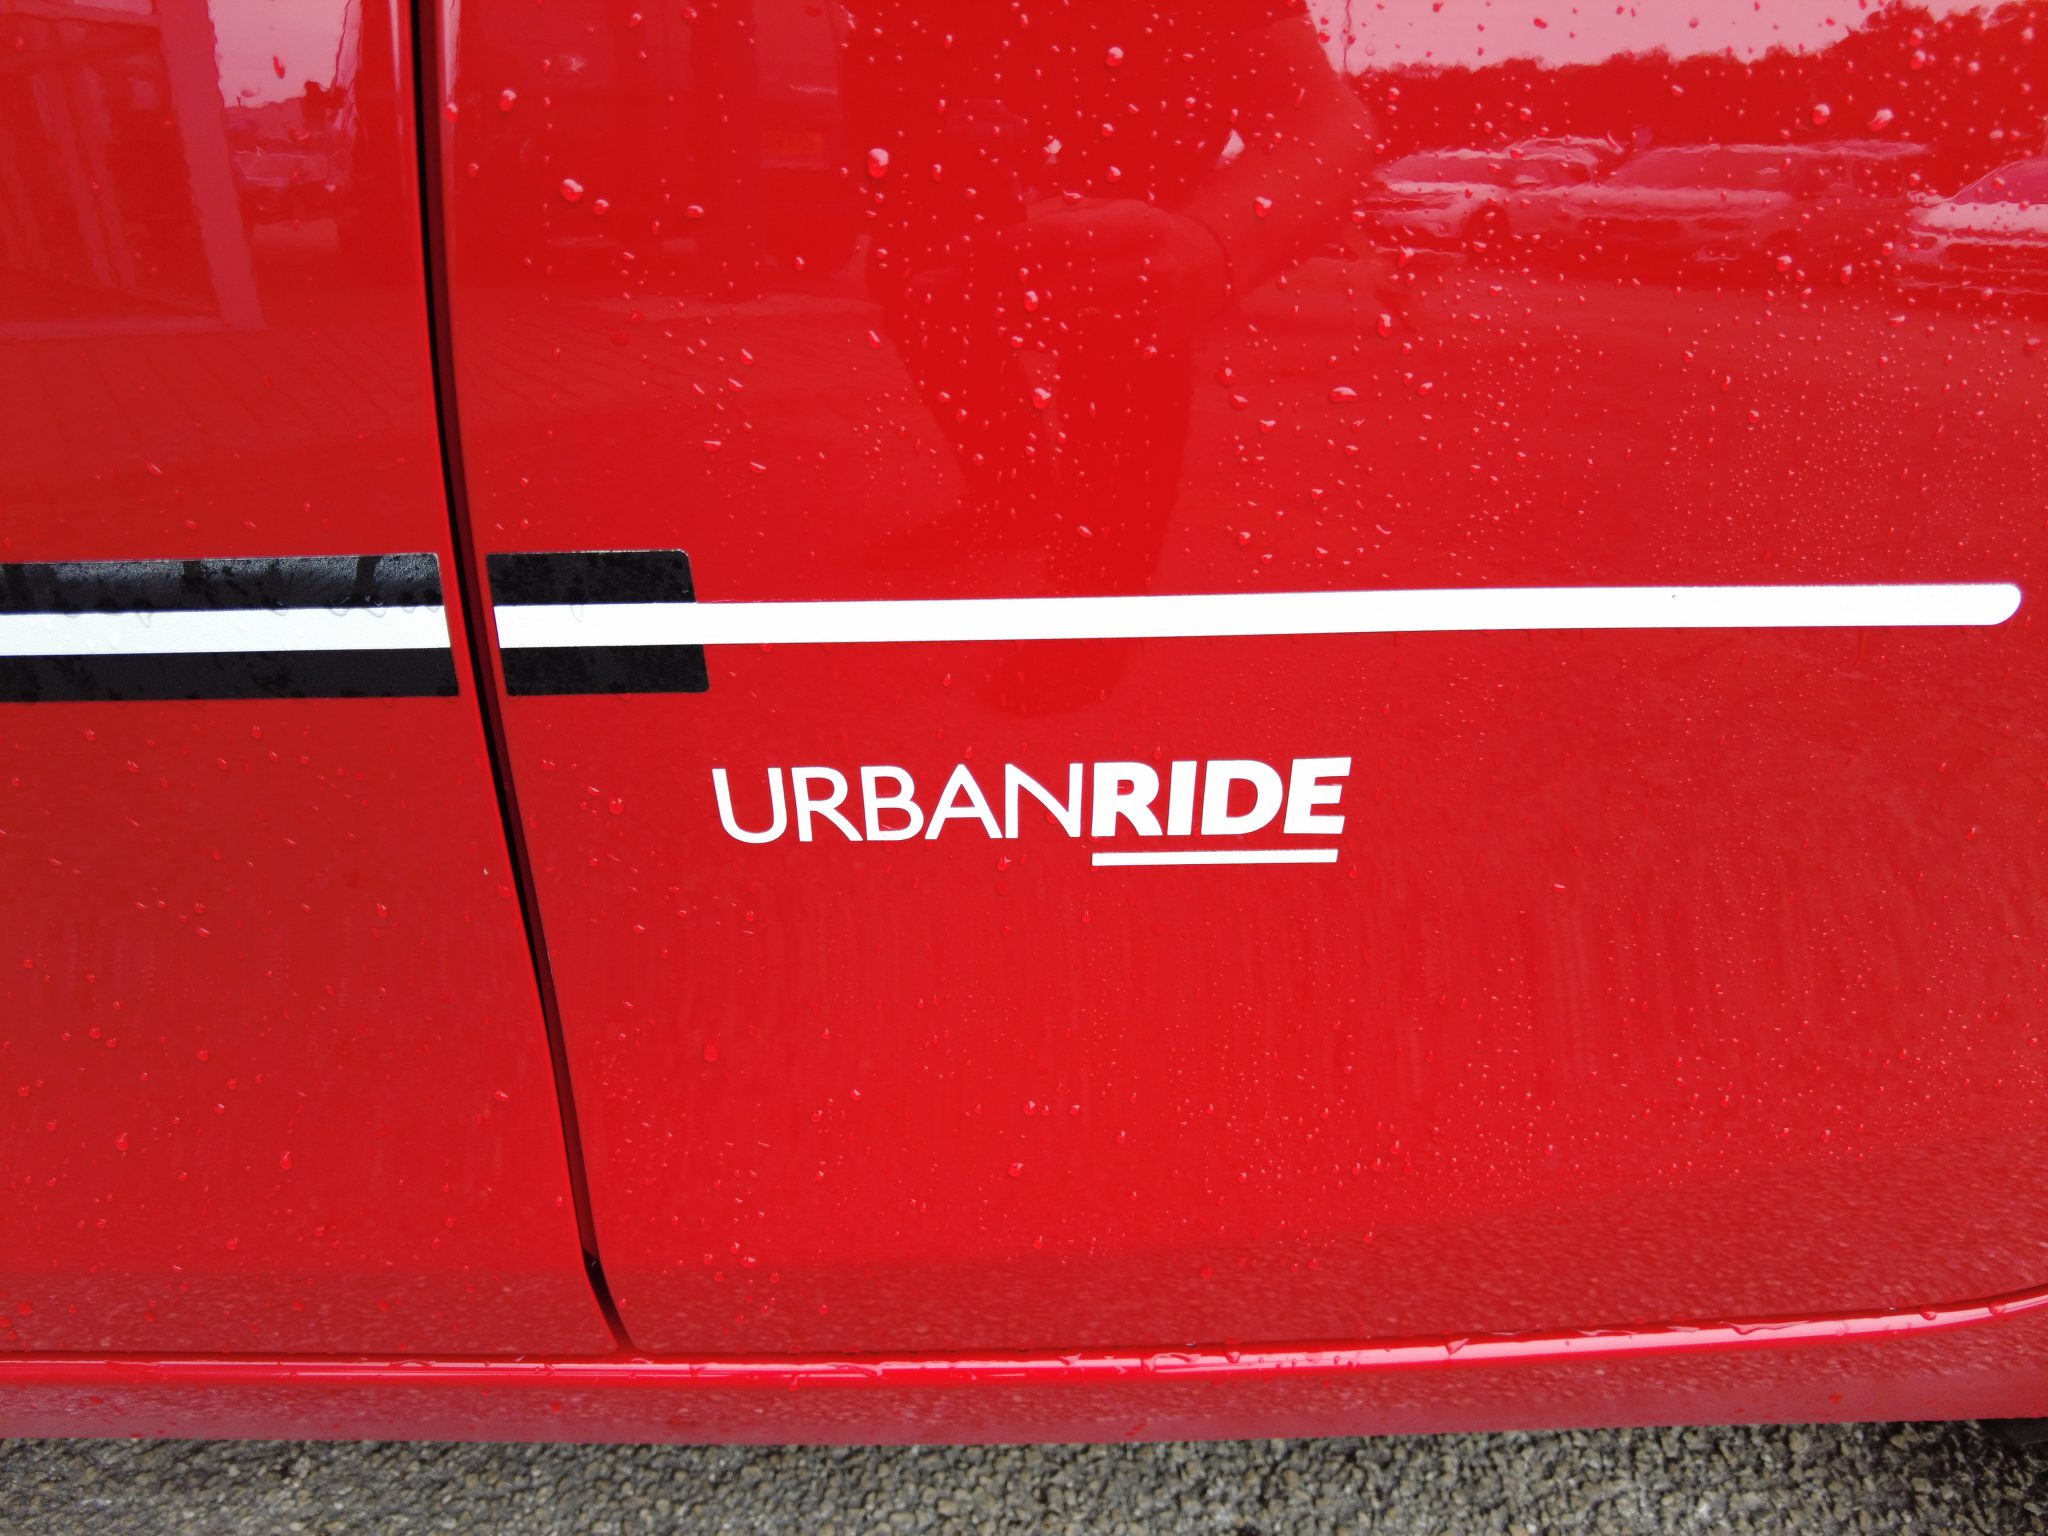 Citroen C1 Urban ride